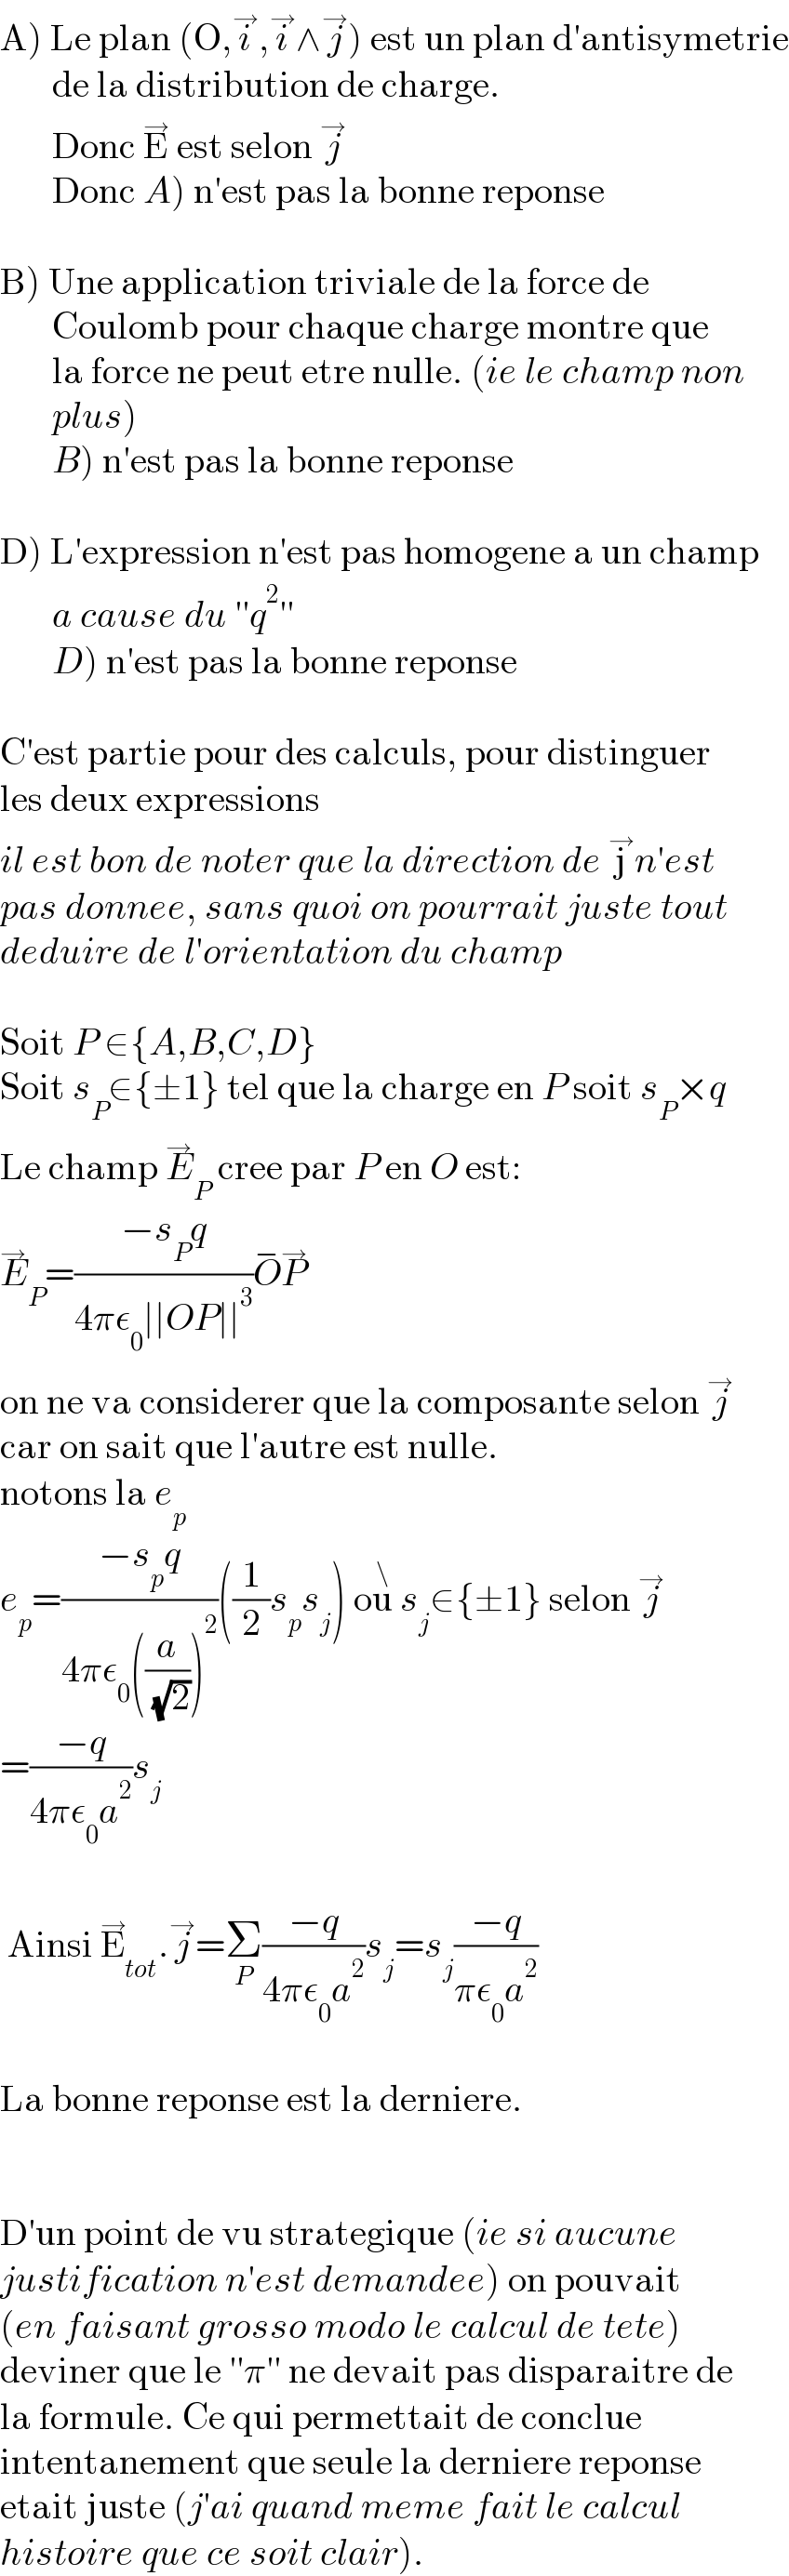 A) Le plan (O,i^→ ,i^→ ∧j^→ ) est un plan d′antisymetrie         de la distribution de charge.         Donc E^→  est selon j^→          Donc A) n′est pas la bonne reponse    B) Une application triviale de la force de          Coulomb pour chaque charge montre que         la force ne peut etre nulle. (ie le champ non         plus)         B) n′est pas la bonne reponse    D) L′expression n′est pas homogene a un champ         a cause du ′′q^2 ′′         D) n′est pas la bonne reponse    C′est partie pour des calculs, pour distinguer  les deux expressions  il est bon de noter que la direction de j^→ n′est  pas donnee, sans quoi on pourrait juste tout   deduire de l′orientation du champ    Soit P ∈{A,B,C,D}  Soit s_P ∈{±1} tel que la charge en P soit s_P ×q  Le champ E_P ^→  cree par P en O est:  E_P ^→ =((−s_P q)/(4πε_0 ∣∣OP∣∣^3 ))O^− P^→   on ne va considerer que la composante selon j^→   car on sait que l′autre est nulle.  notons la e_p   e_p =((−s_p q)/(4πε_0 ((a/( (√2))))^2 ))((1/2)s_p s_j ) ou^\  s_j ∈{±1} selon j^→   =((−q)/(4πε_0 a^2 ))s_j      Ainsi E_(tot) ^→ .j^→ =Σ_P ((−q)/(4πε_0 a^2 ))s_j =s_j ((−q)/(πε_0 a^2 ))    La bonne reponse est la derniere.      D′un point de vu strategique (ie si aucune   justification n′est demandee) on pouvait  (en faisant grosso modo le calcul de tete)  deviner que le ′′π′′ ne devait pas disparaitre de  la formule. Ce qui permettait de conclue   intentanement que seule la derniere reponse  etait juste (j′ai quand meme fait le calcul   histoire que ce soit clair).  